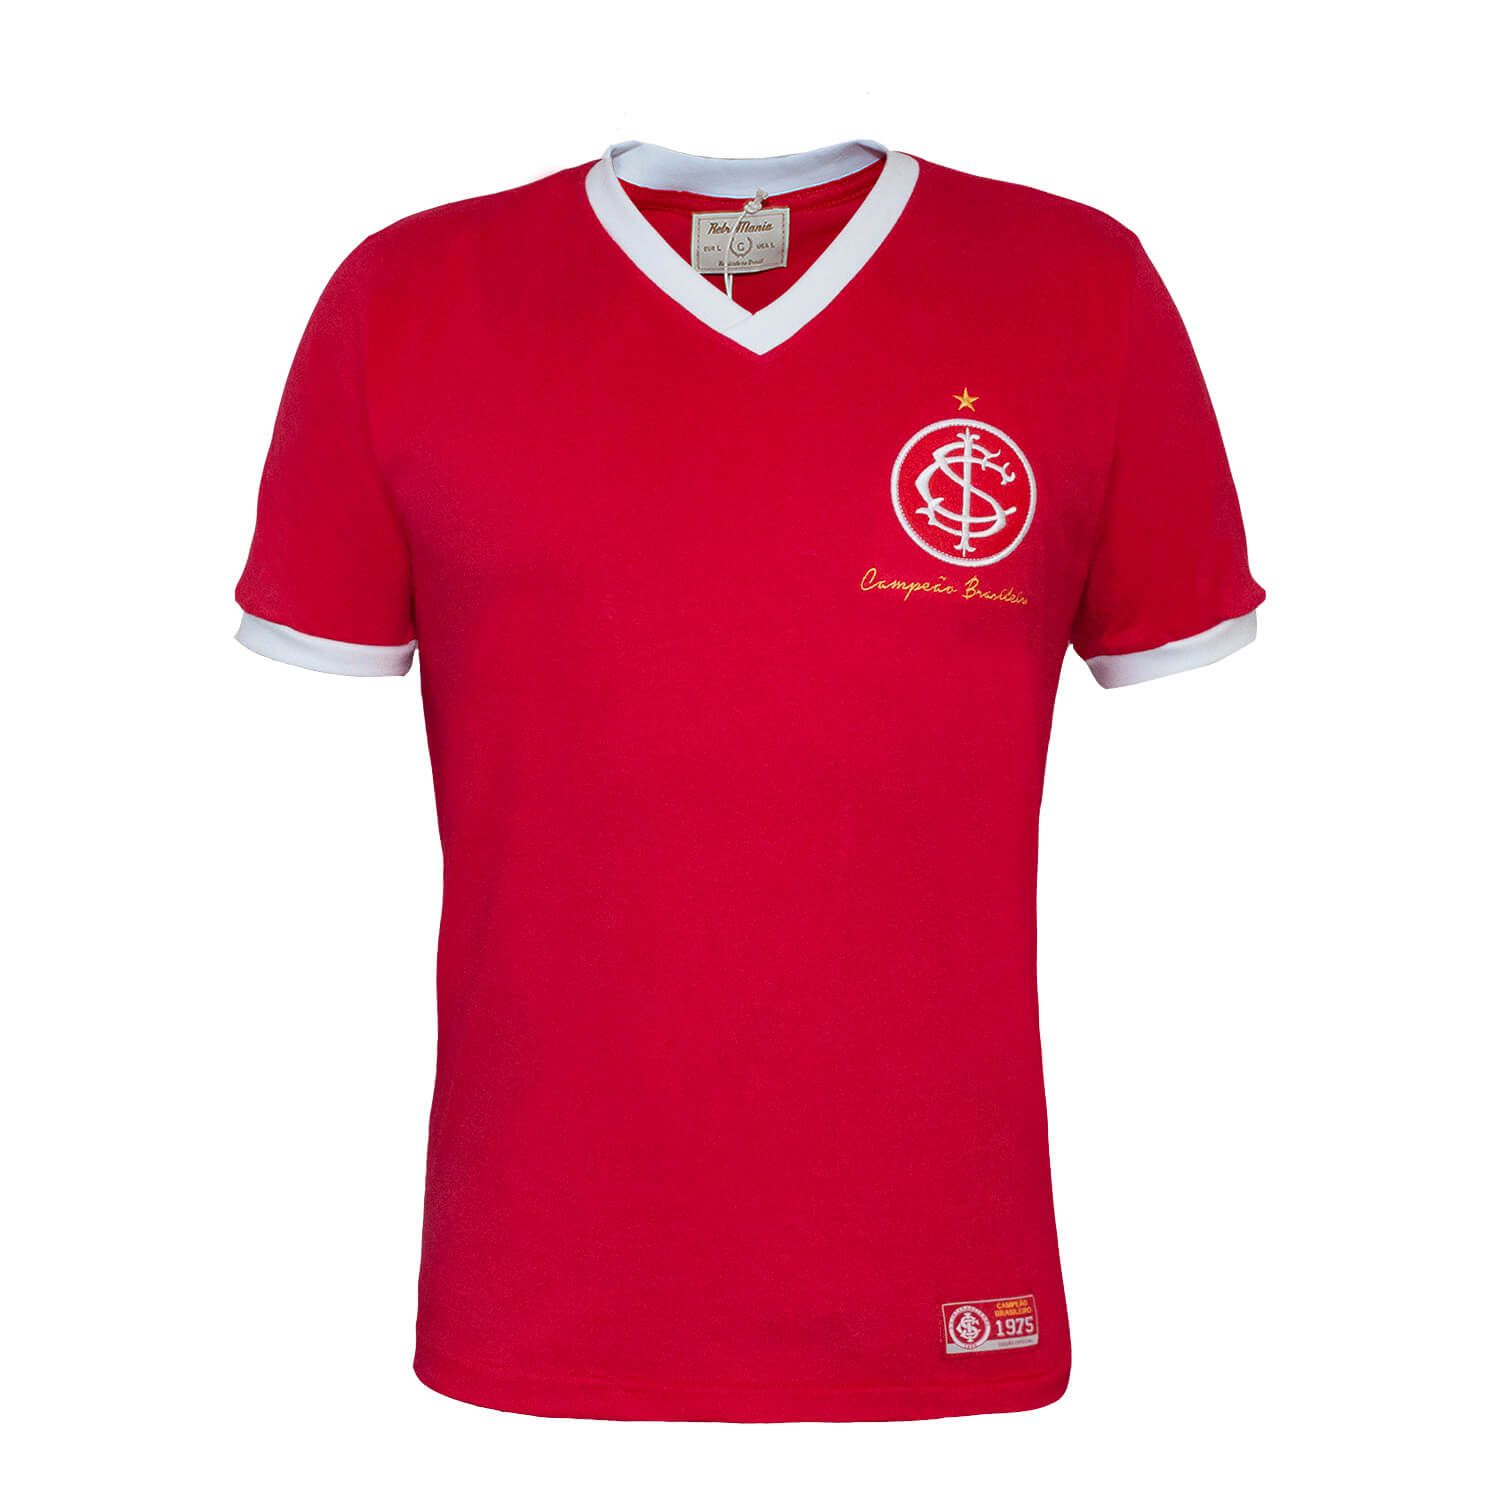 Camiseta Internacional Retrô Mania 1975 Feminina - Vermelho